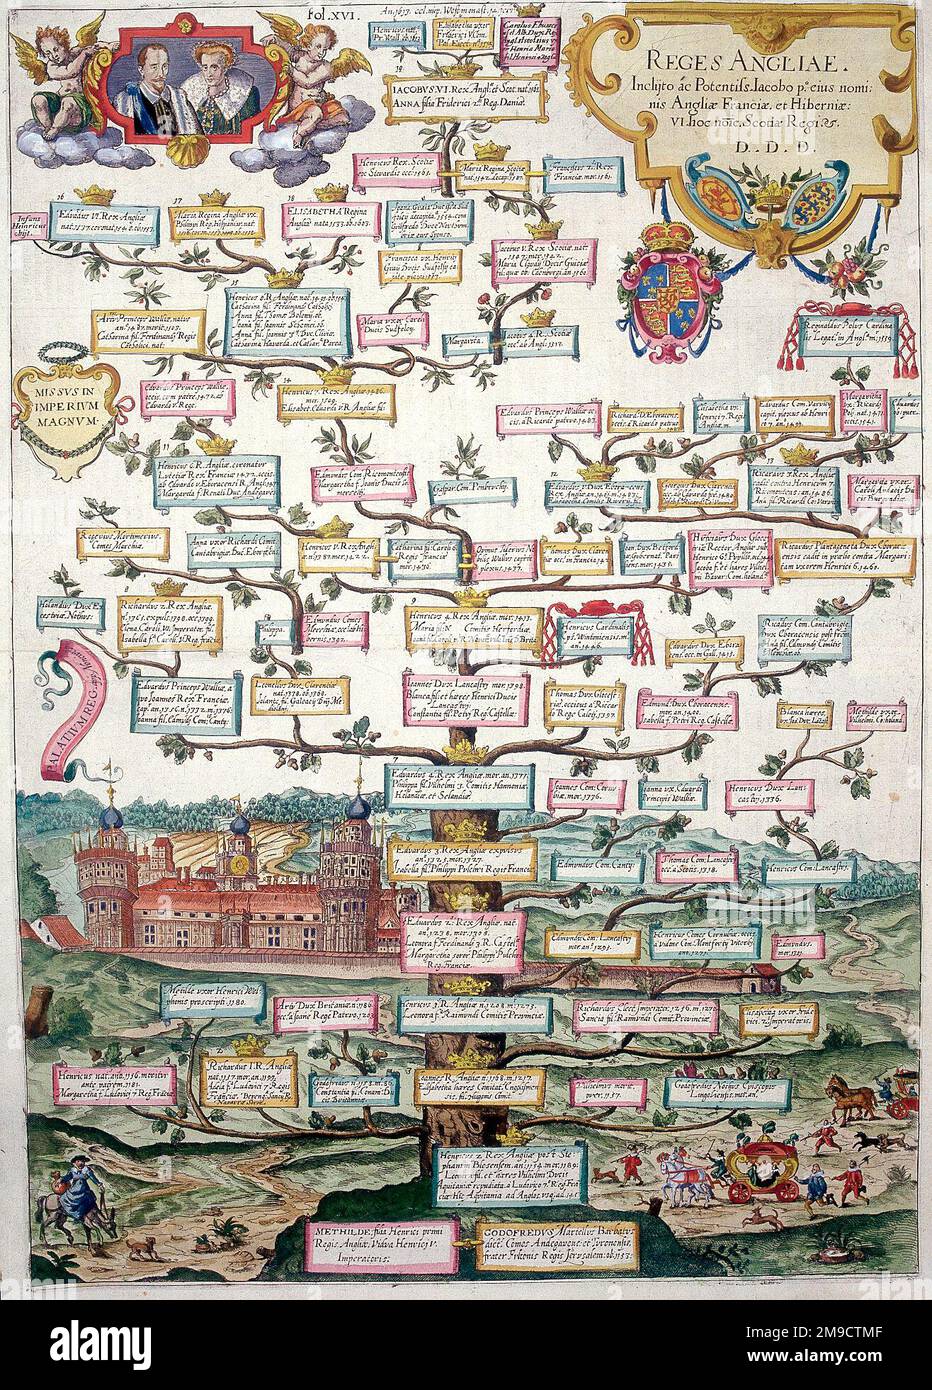 Reges Angliae - Árbol genealógico de los Reyes de Inglaterra - Realeza británica desde el siglo 12th hasta el siglo 16th de la emperatriz Matilda al rey James Foto de stock